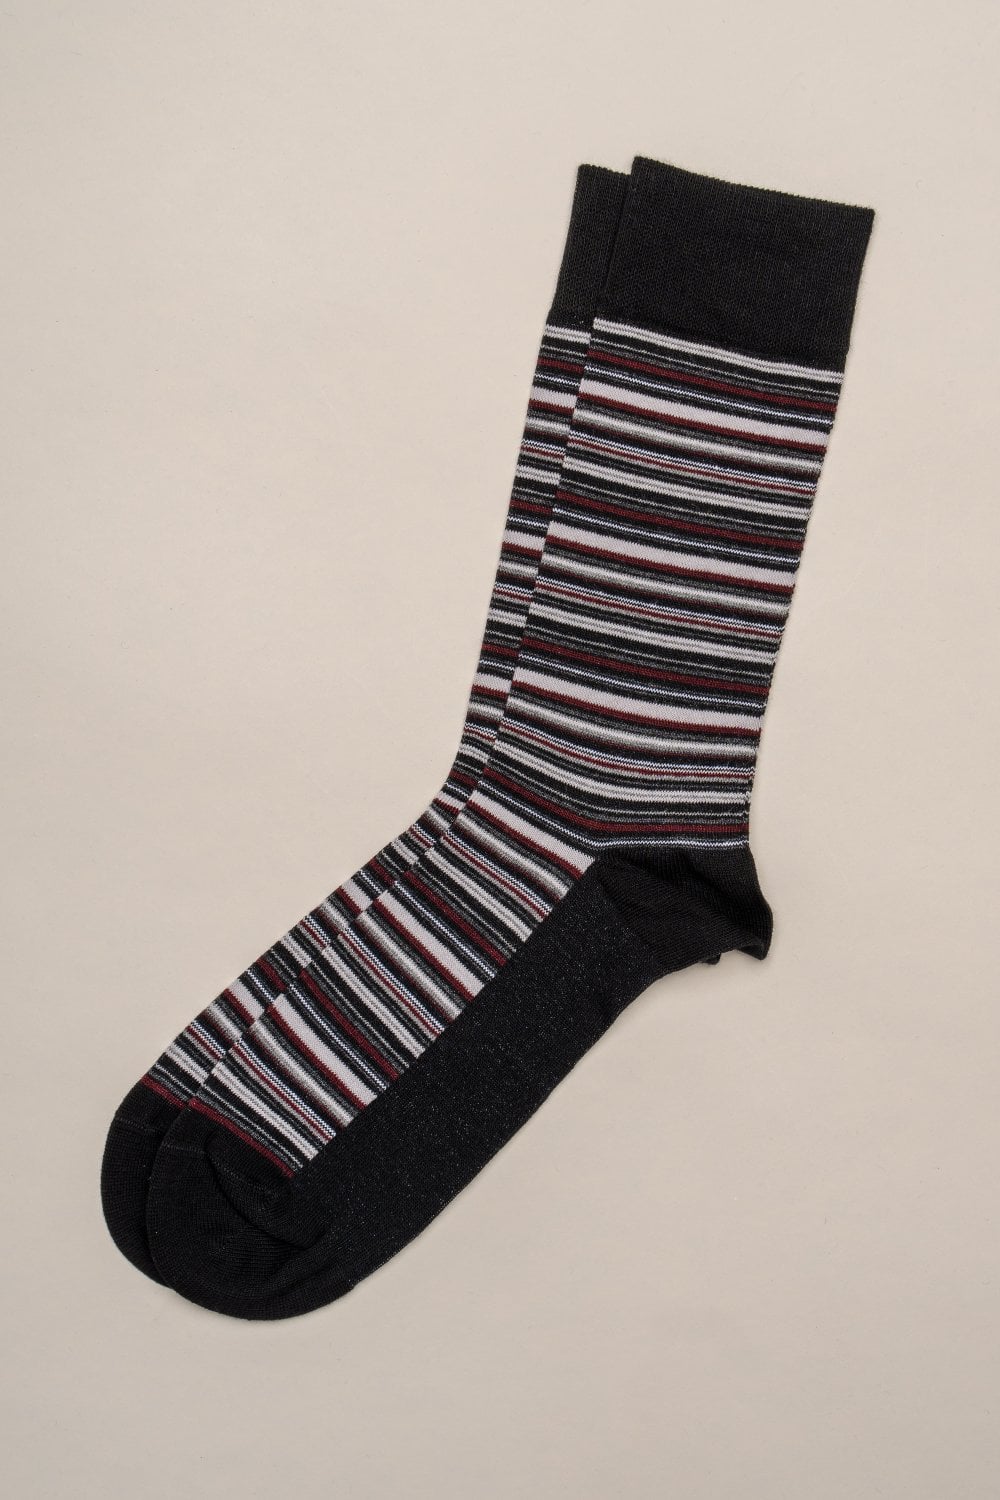 Cavani Tevot Sokker 3 - par - Socks